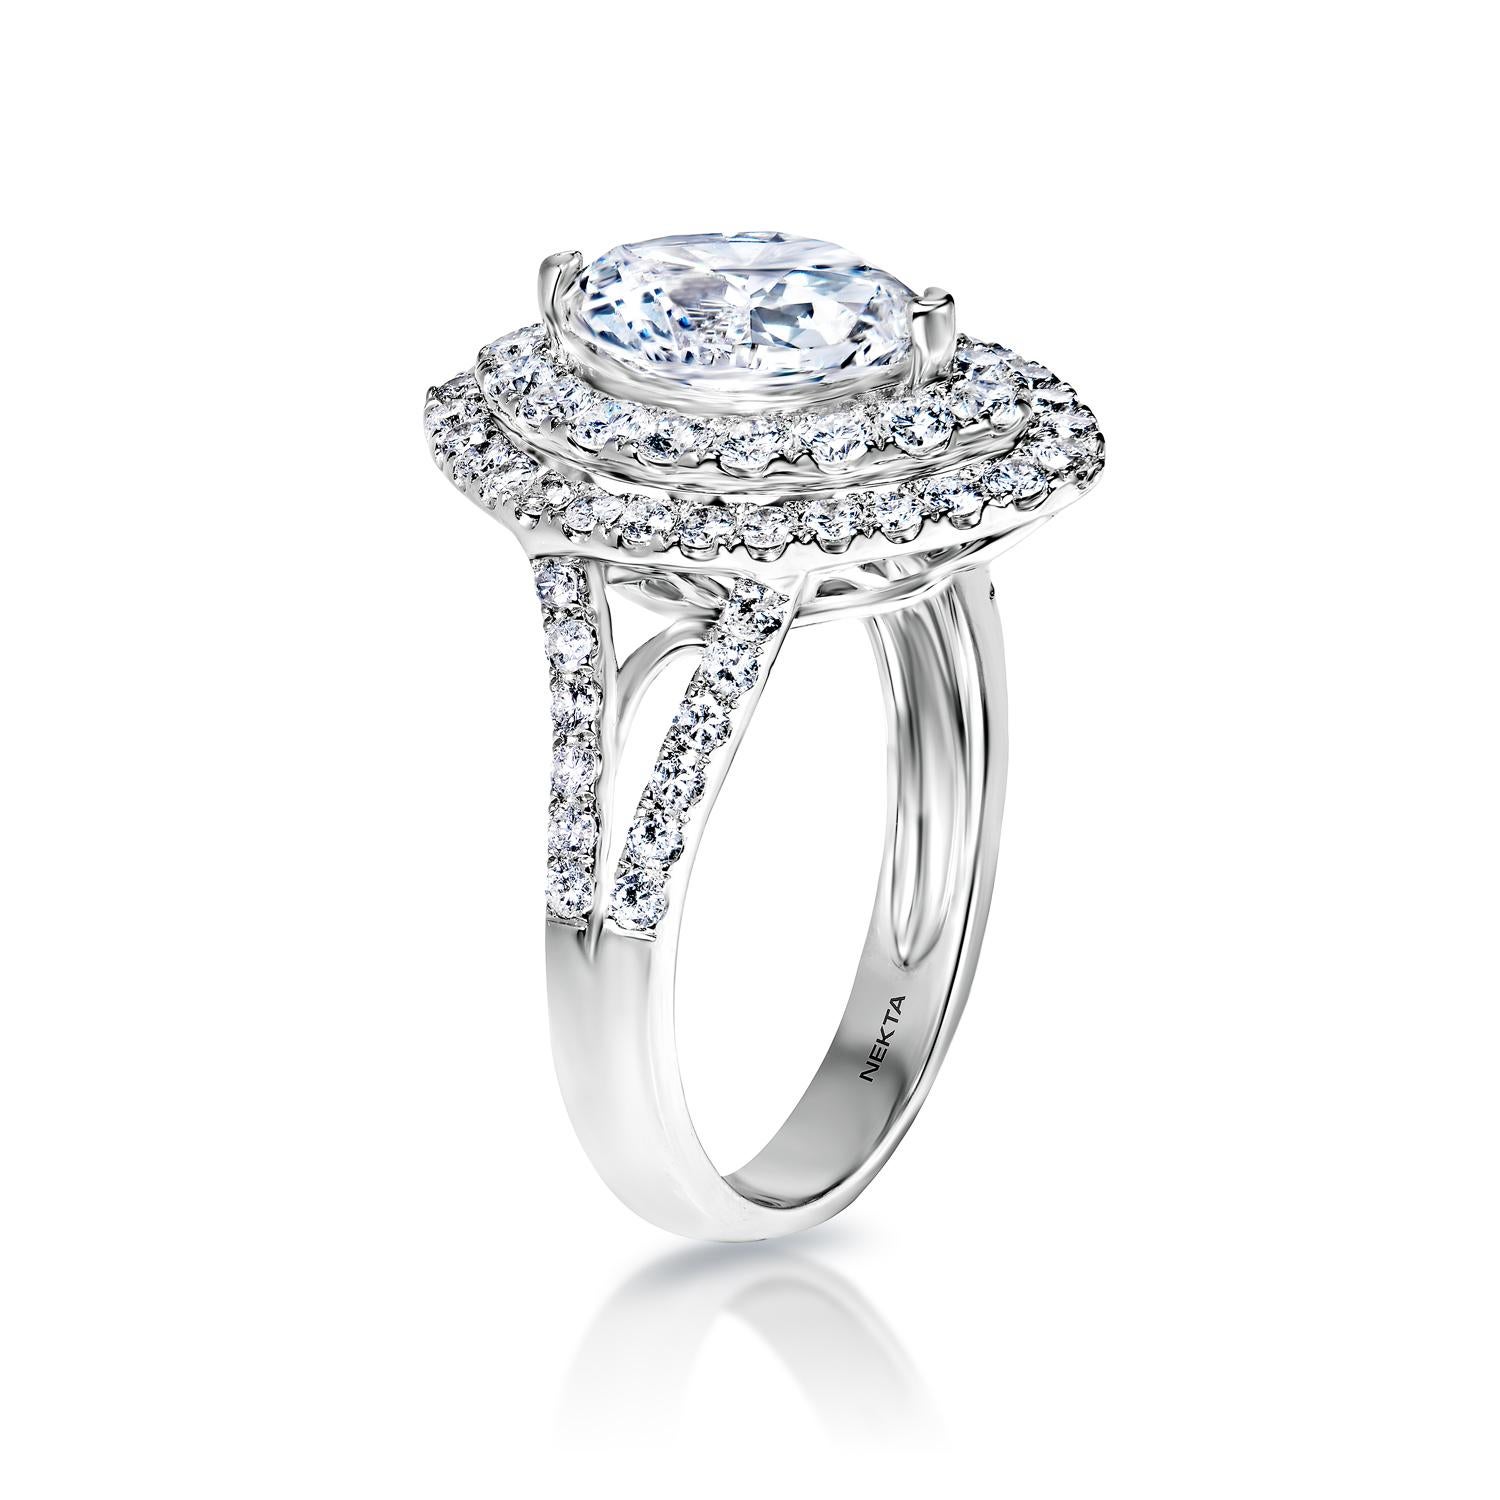 3 carat marquise cut diamond ring